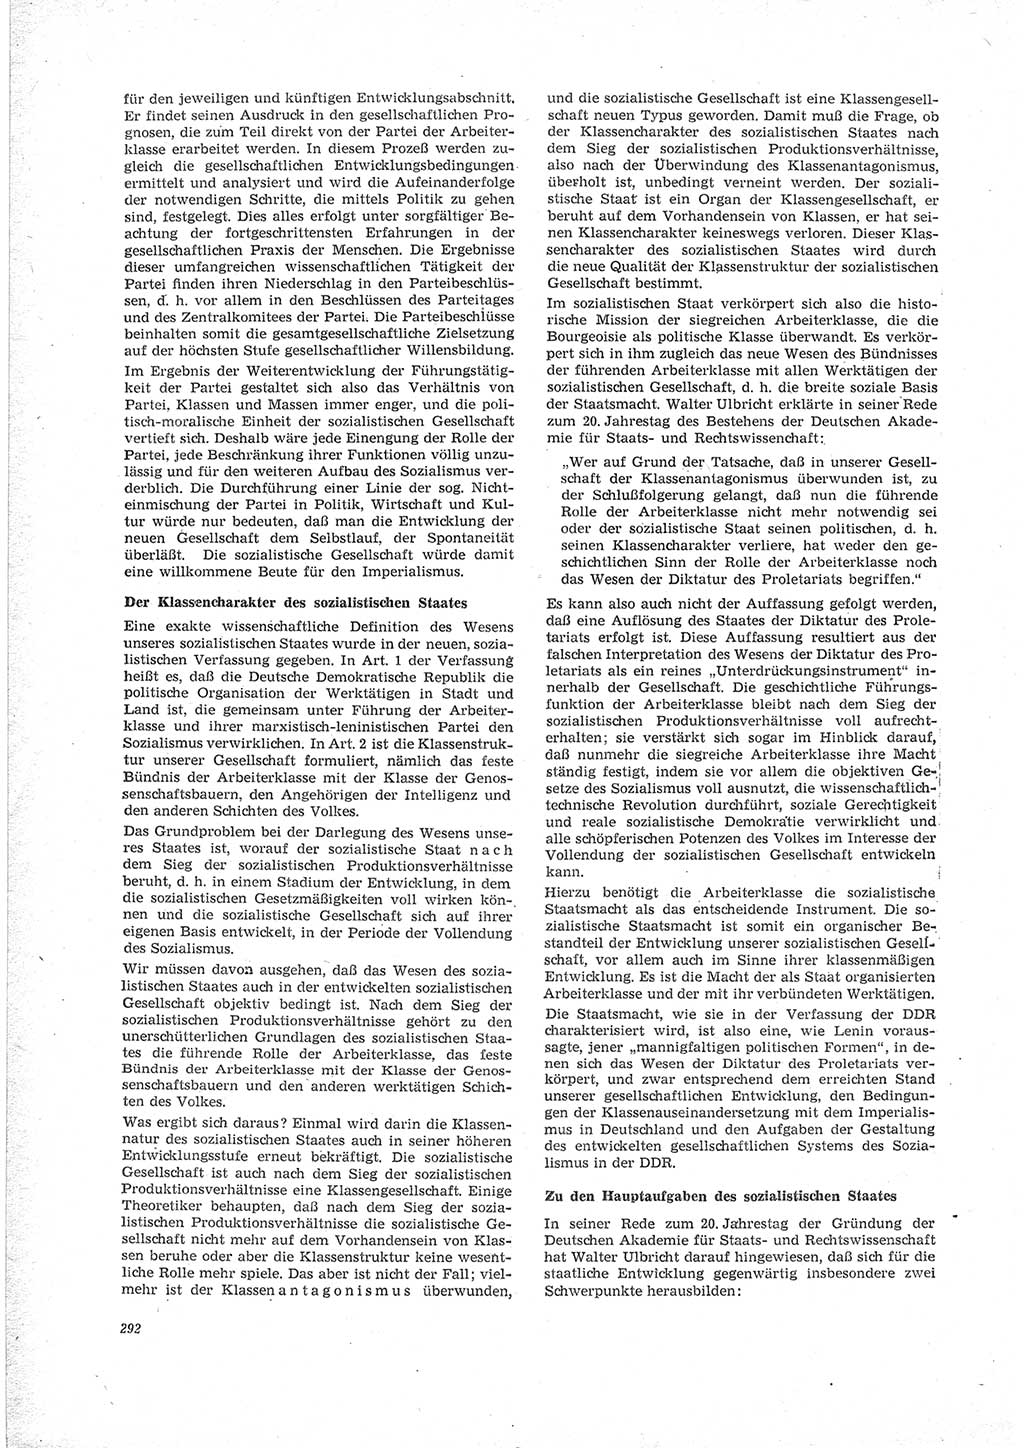 Neue Justiz (NJ), Zeitschrift für Recht und Rechtswissenschaft [Deutsche Demokratische Republik (DDR)], 23. Jahrgang 1969, Seite 292 (NJ DDR 1969, S. 292)